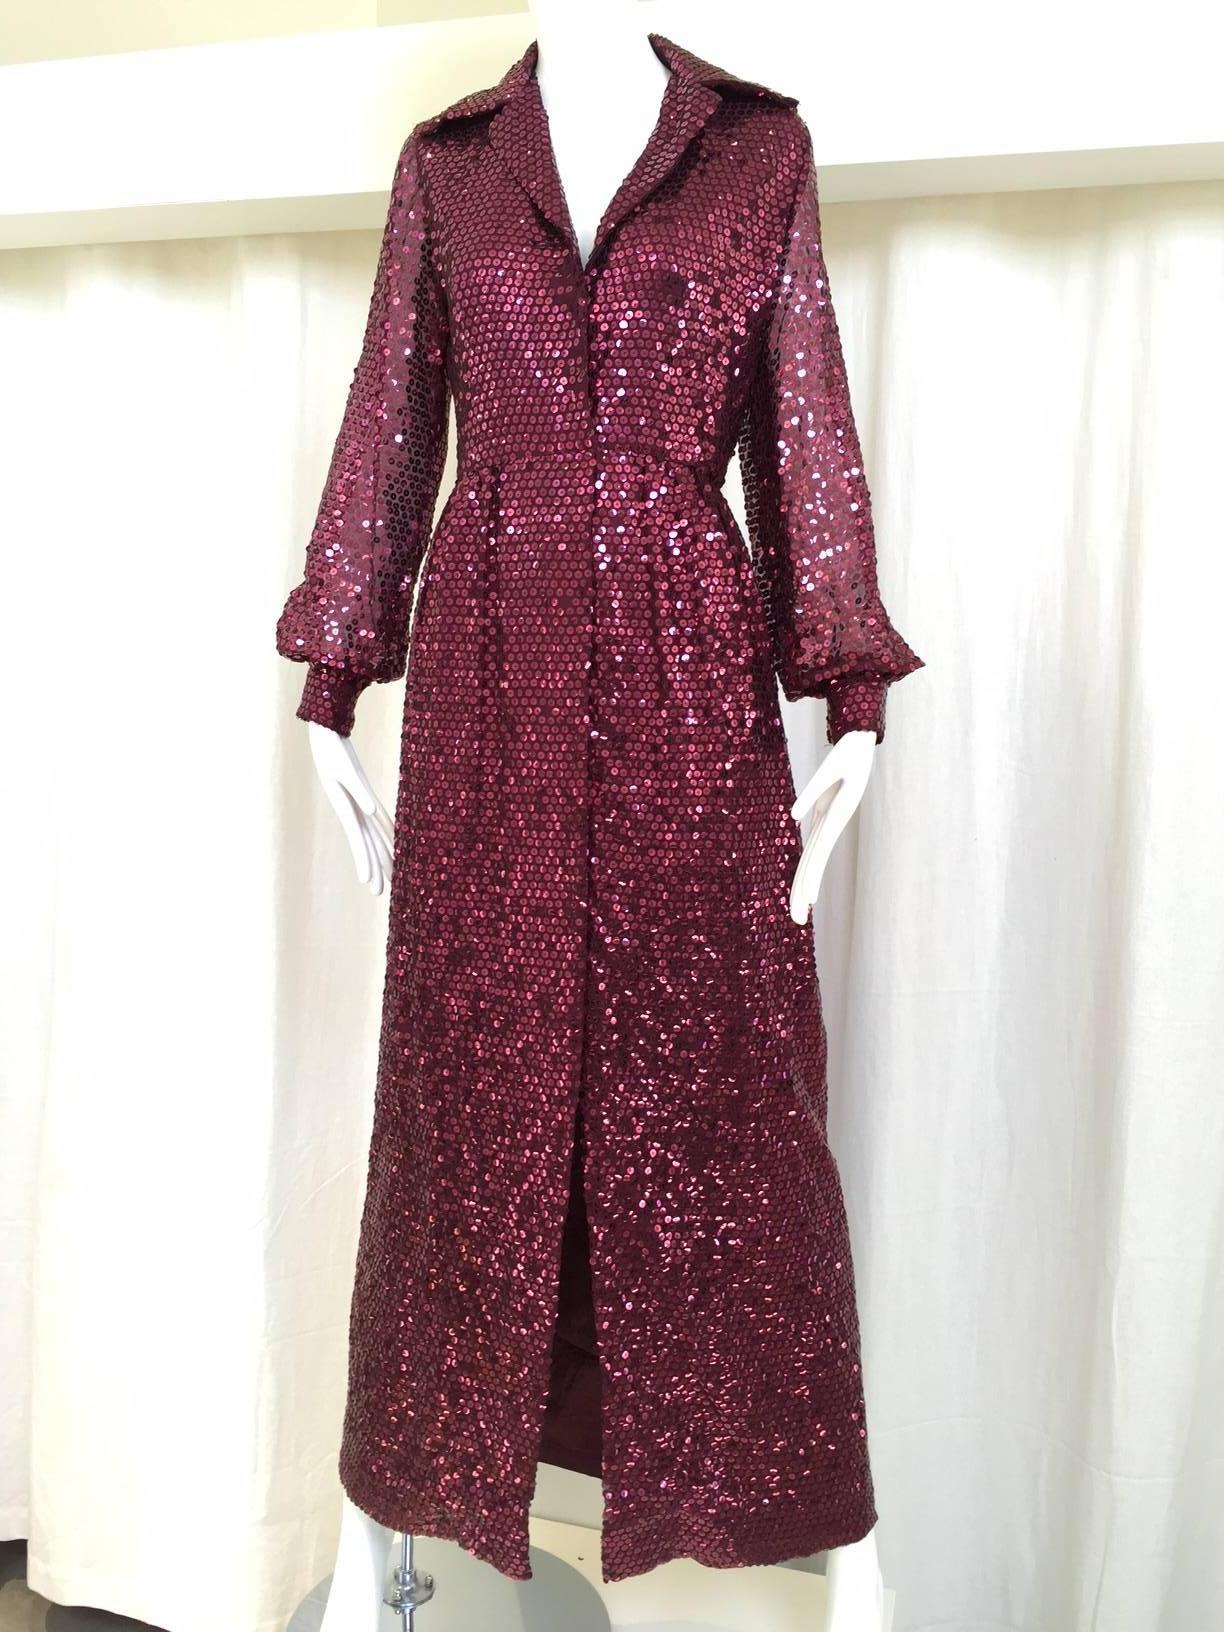 1970s Oscar De La Renta maroon sequin shirt dress.
Bust: 36